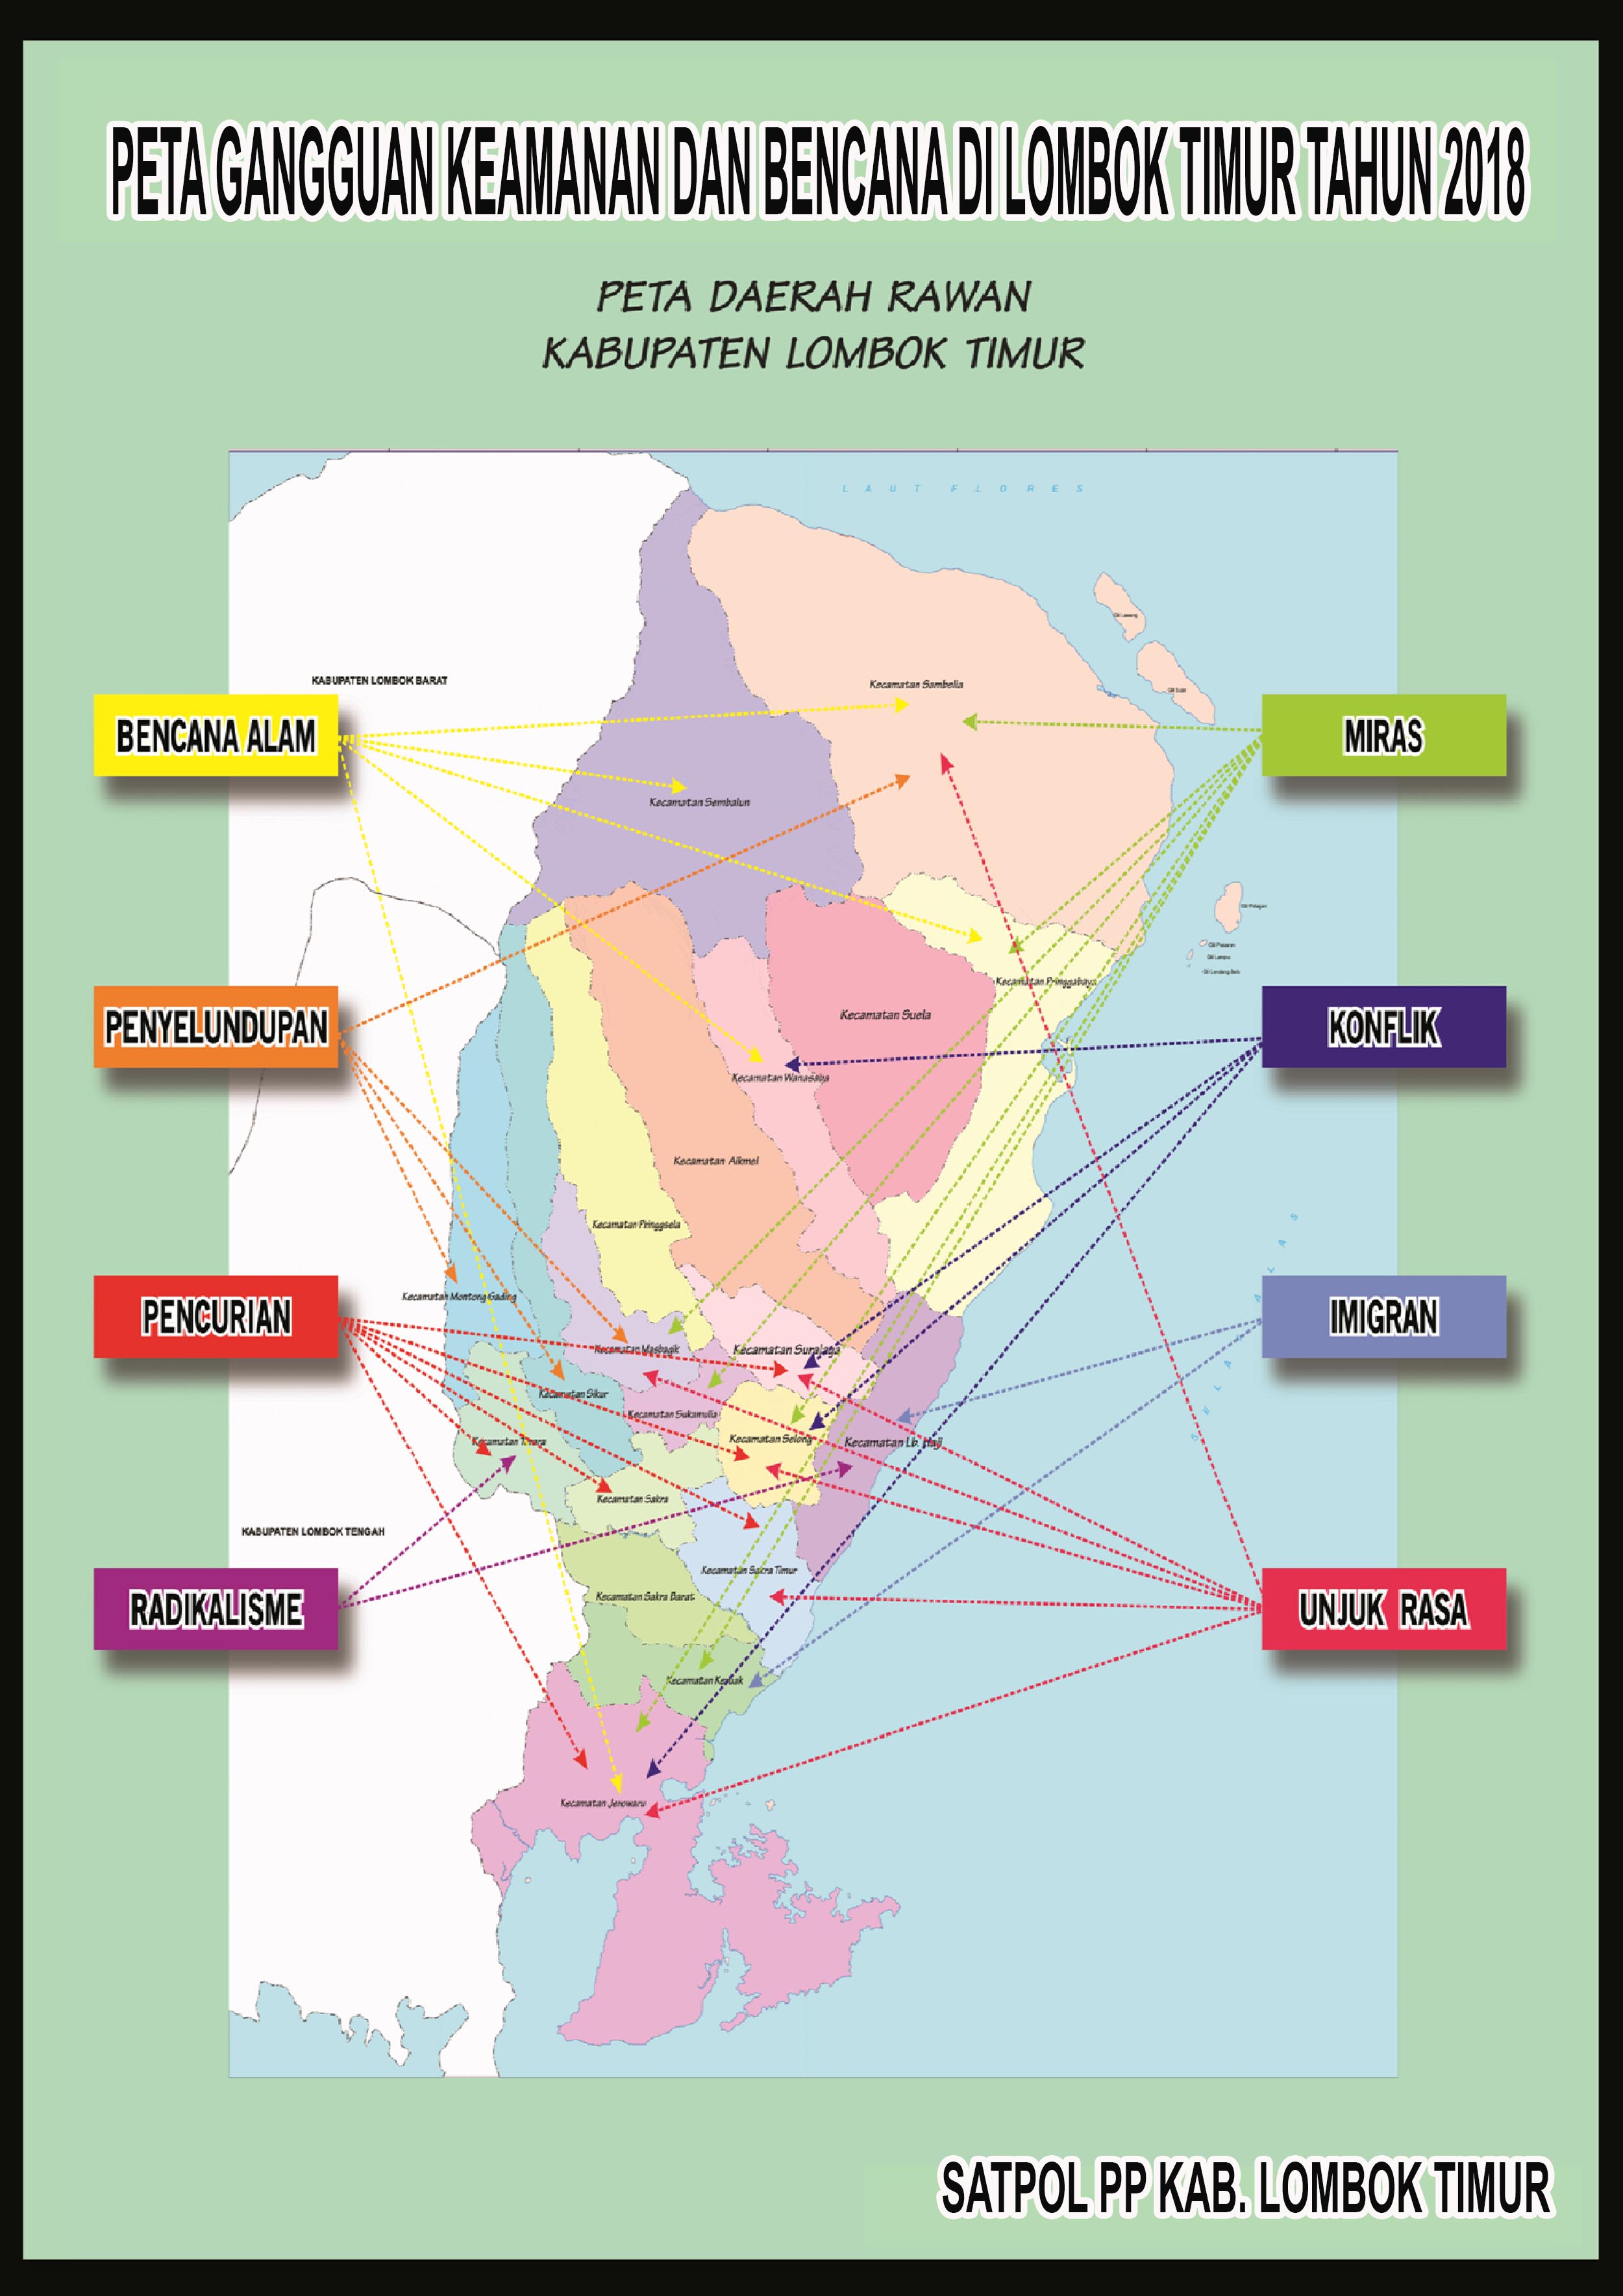 Peta Gangguan Keamanan dan Bencana Kab. Lombok Timur